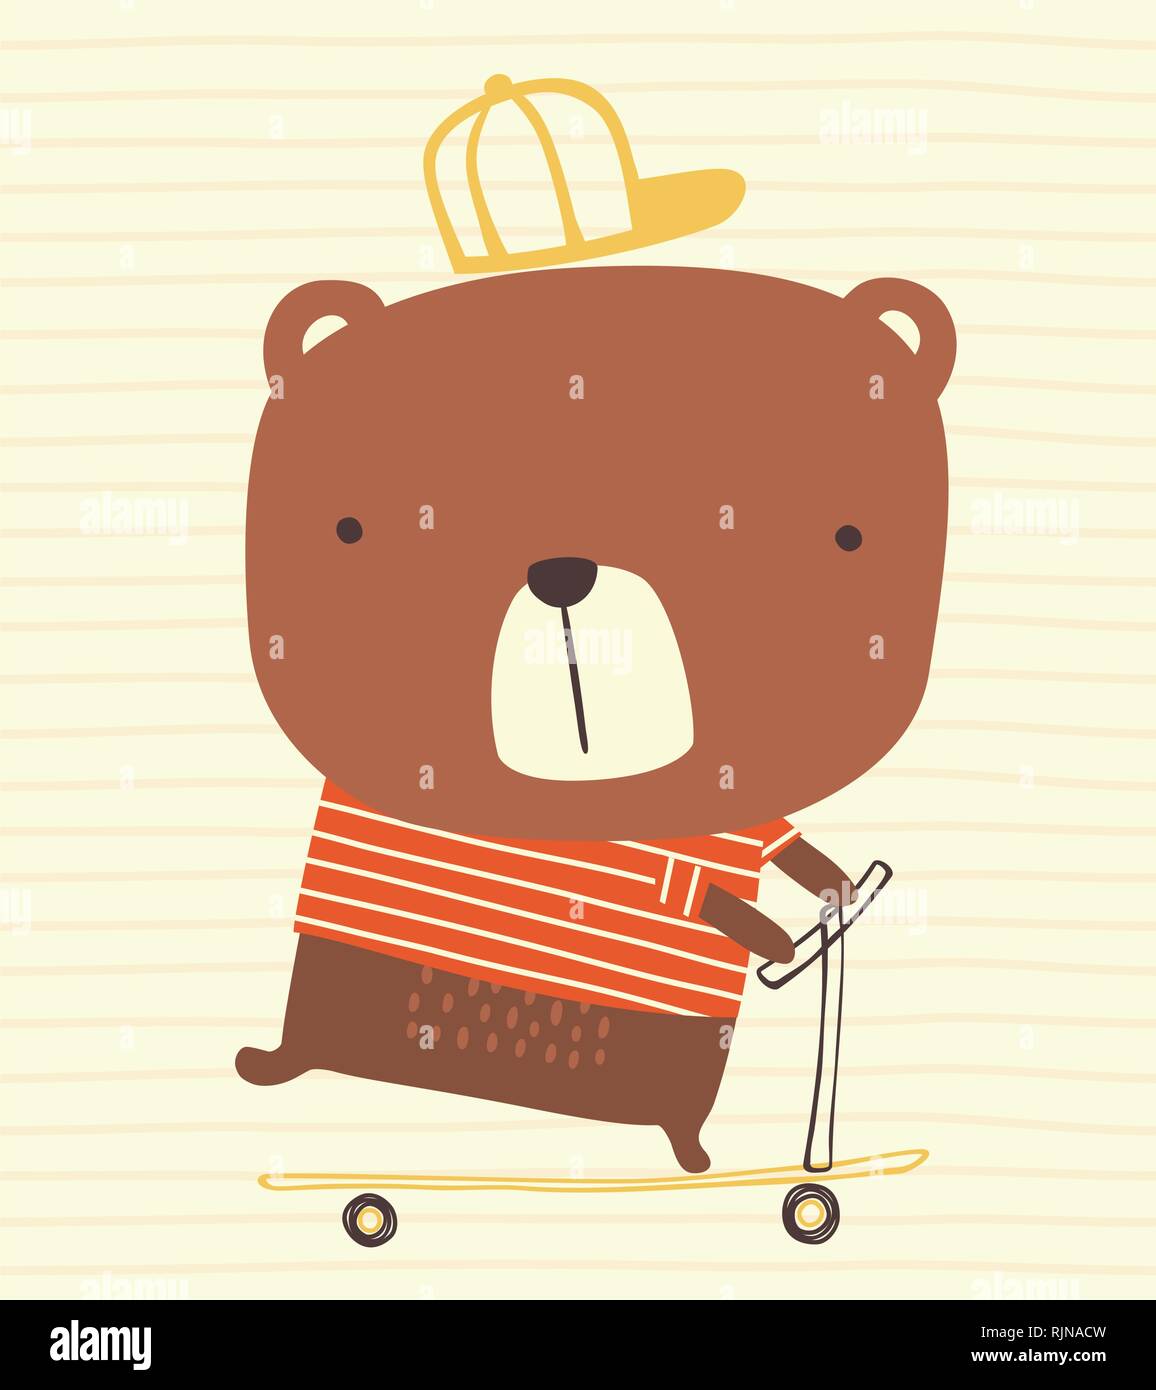 Simpatico orso con cappuccio a cavallo di un kick scooter su sfondo striato. disegnati a mano illustrazione di stile possono essere utilizzati per la decorazione di vivaio, biglietti di auguri, fash Illustrazione Vettoriale